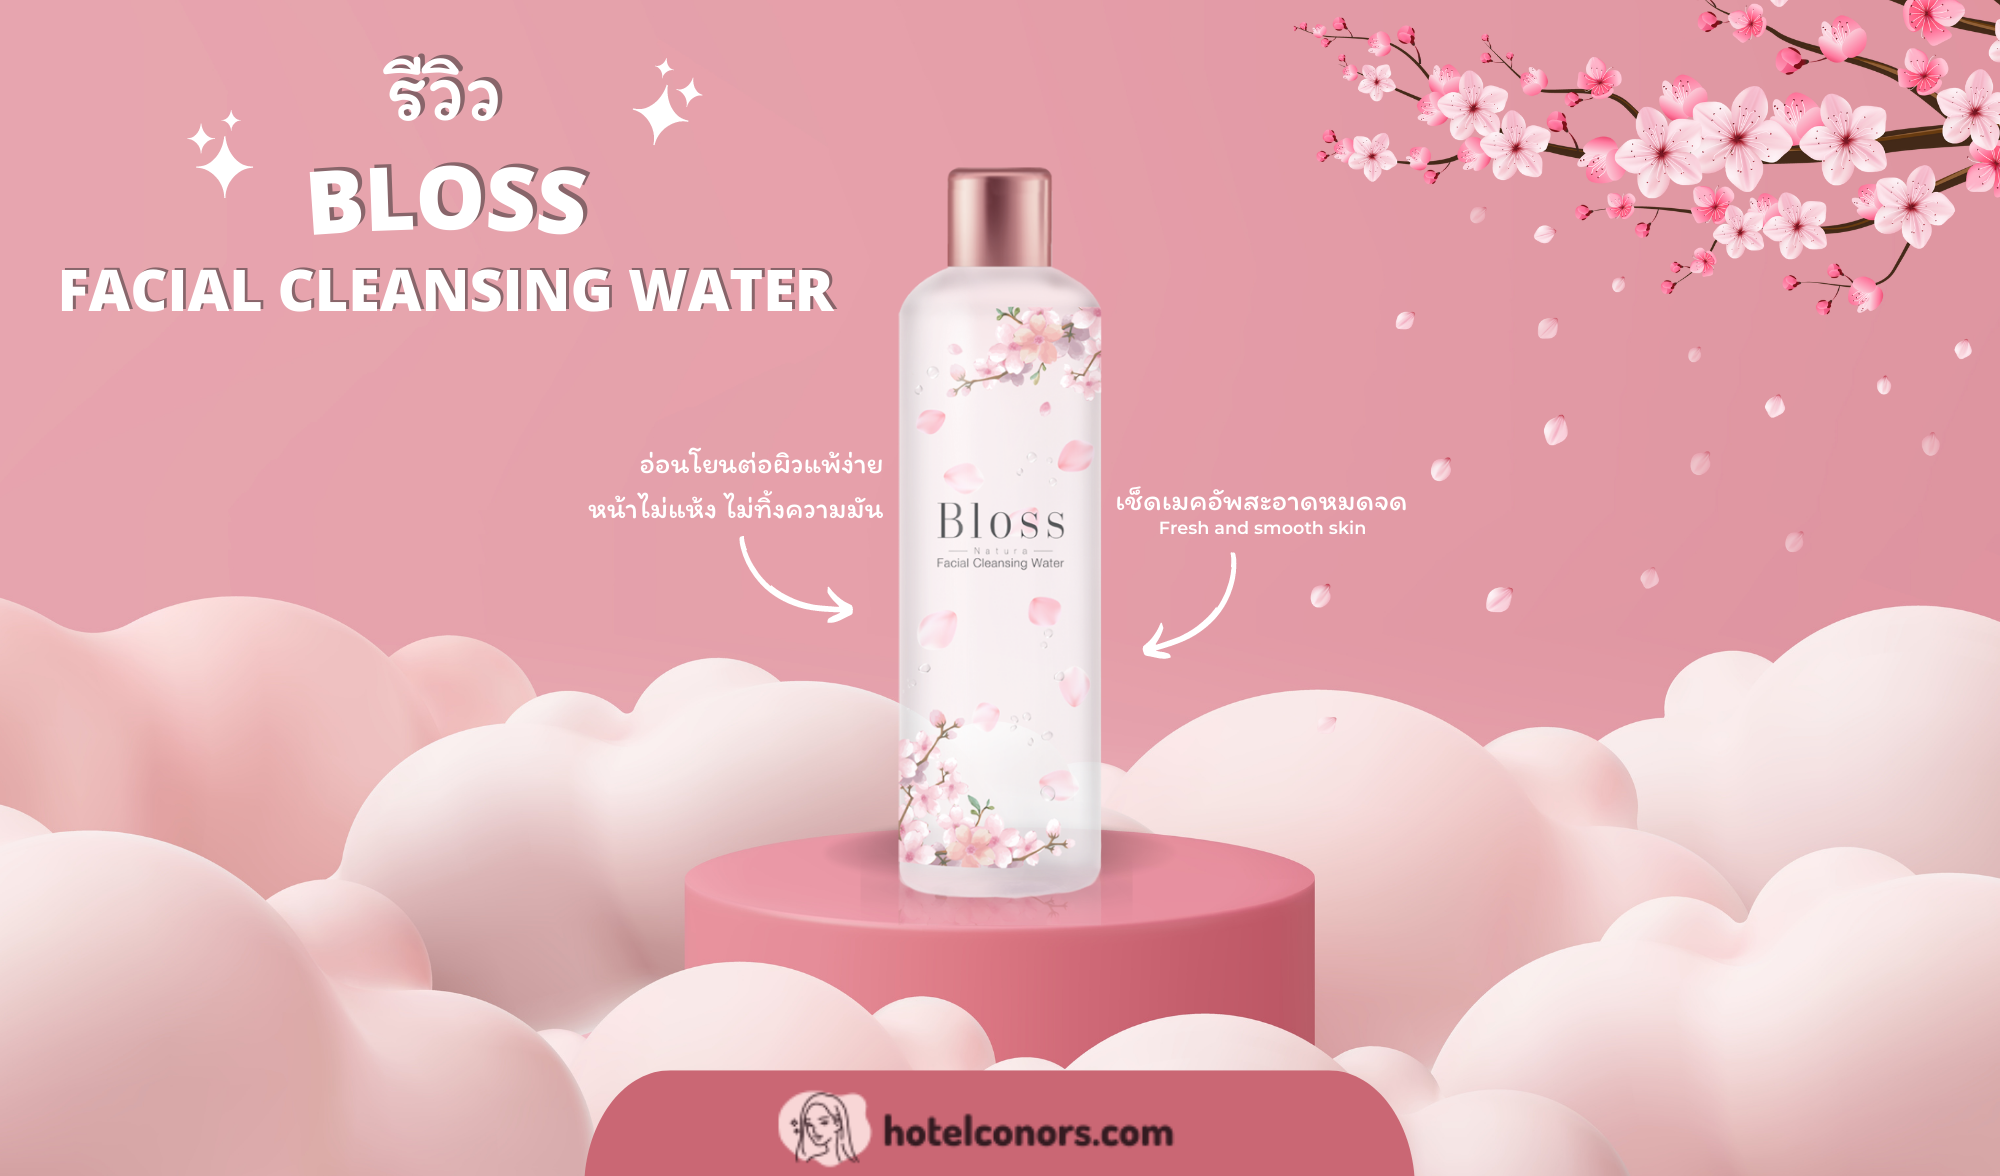 รีวิว Bloss Facial Cleansing Water คลีนซิ่งดอกซากุระ